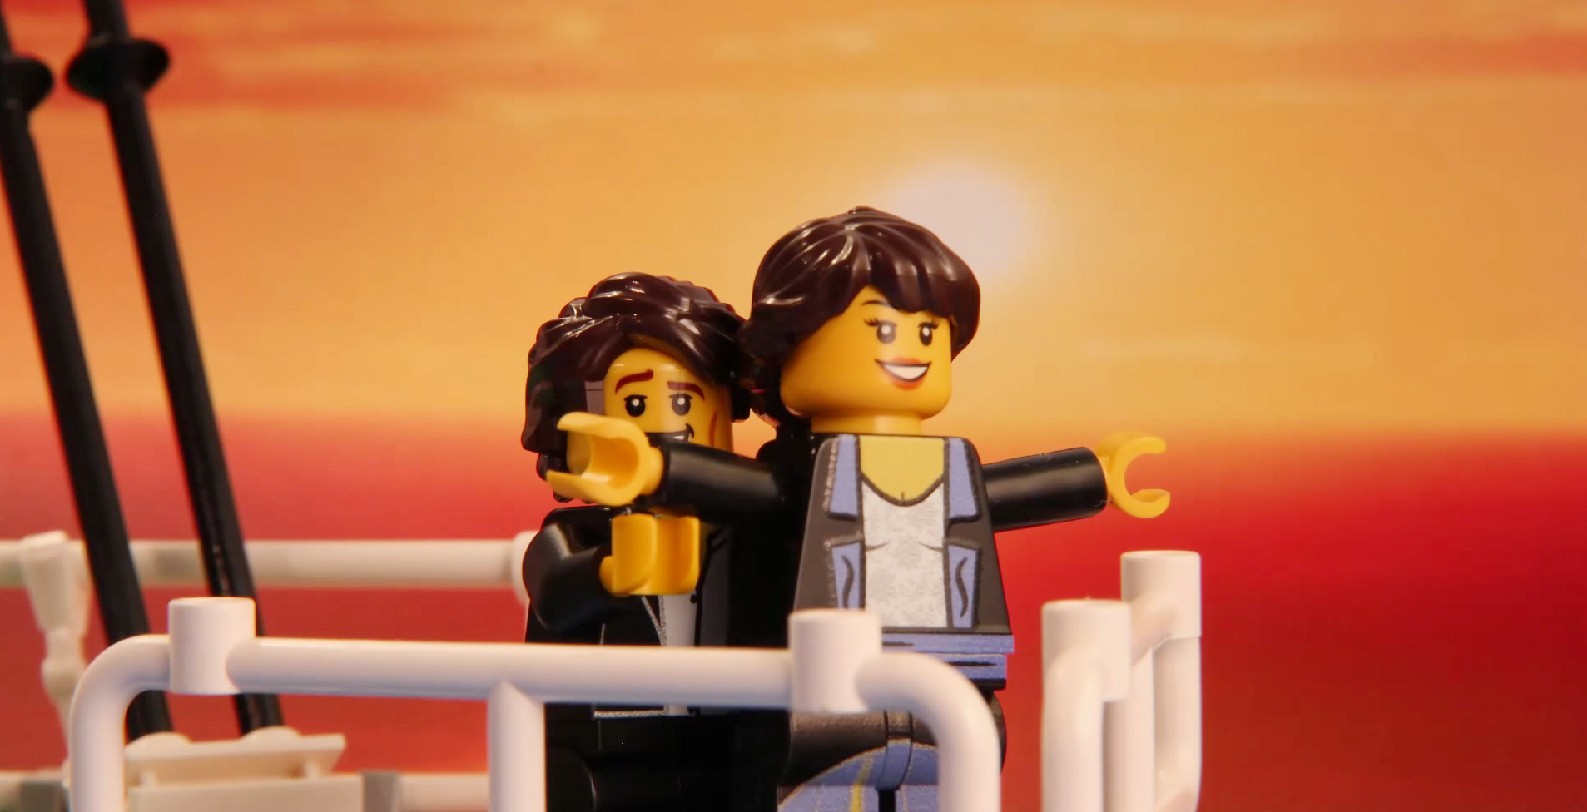 Cena de Titanic retratada por Morgan Spence com peças de Lego (Foto: Reprodução/YouTube)